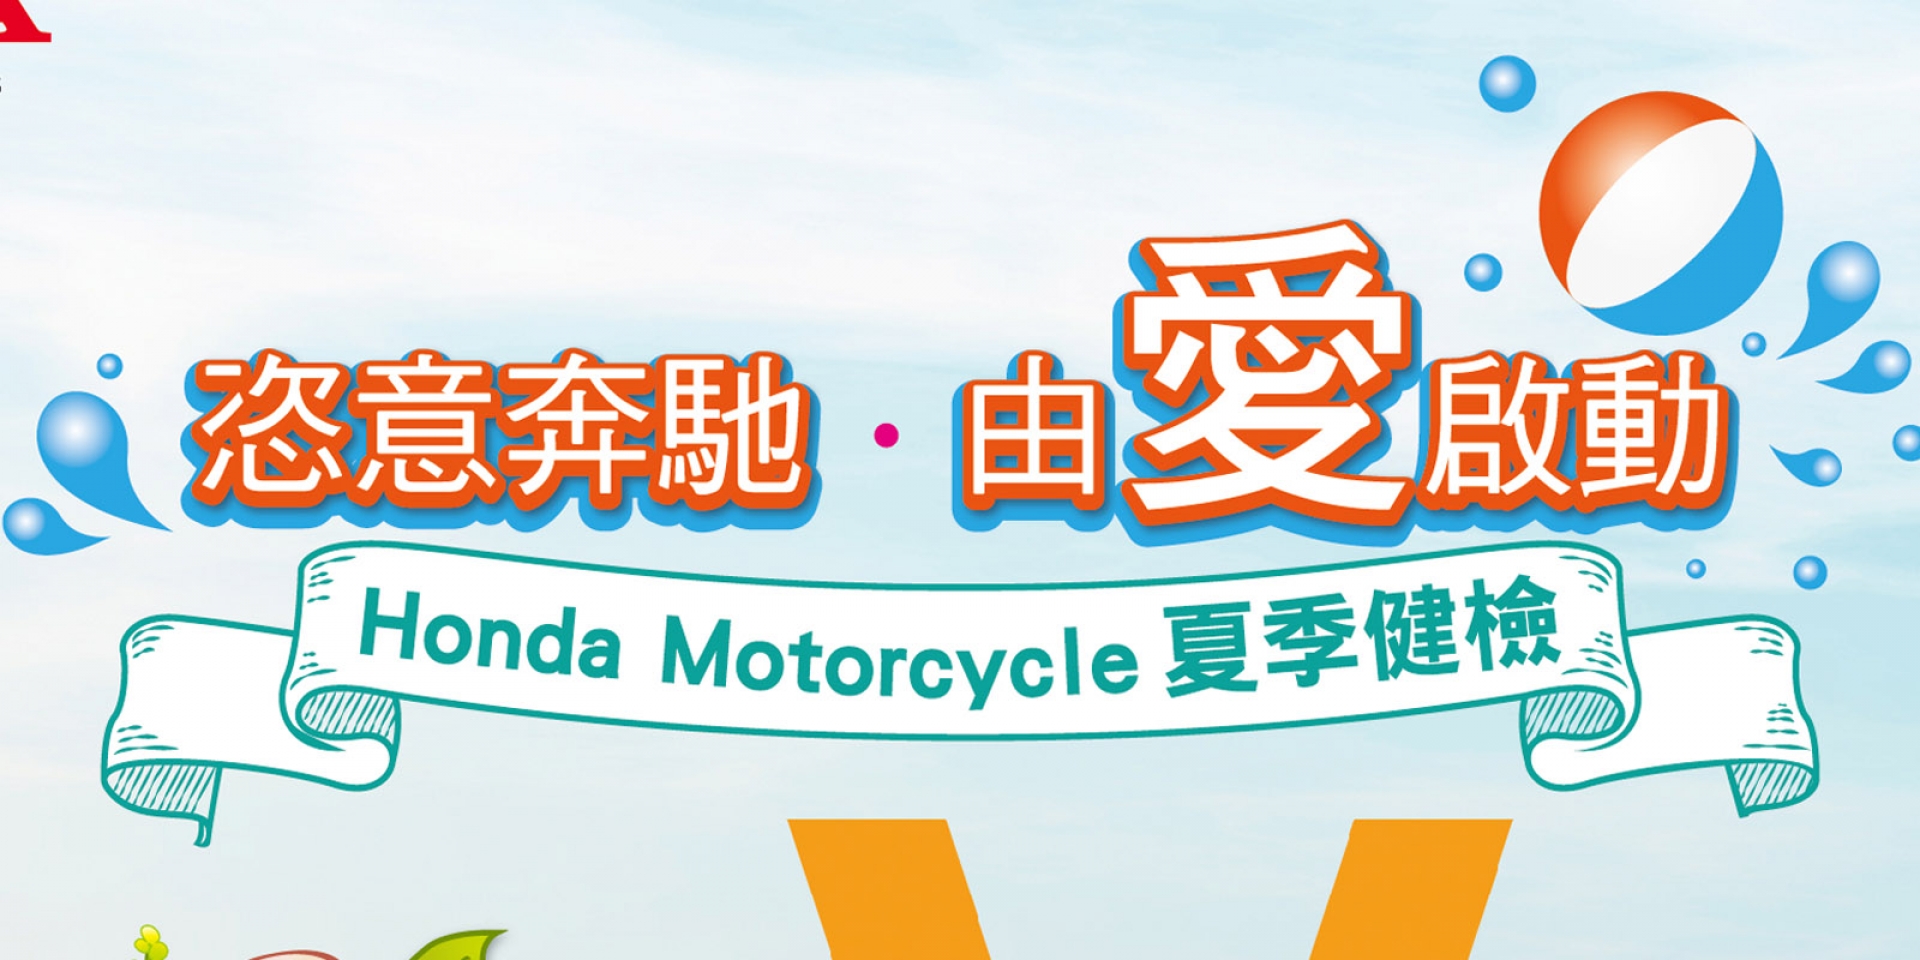 官方新聞稿。Honda Motorcycle 夏季服務活動開跑  恣意奔馳 由愛啟動